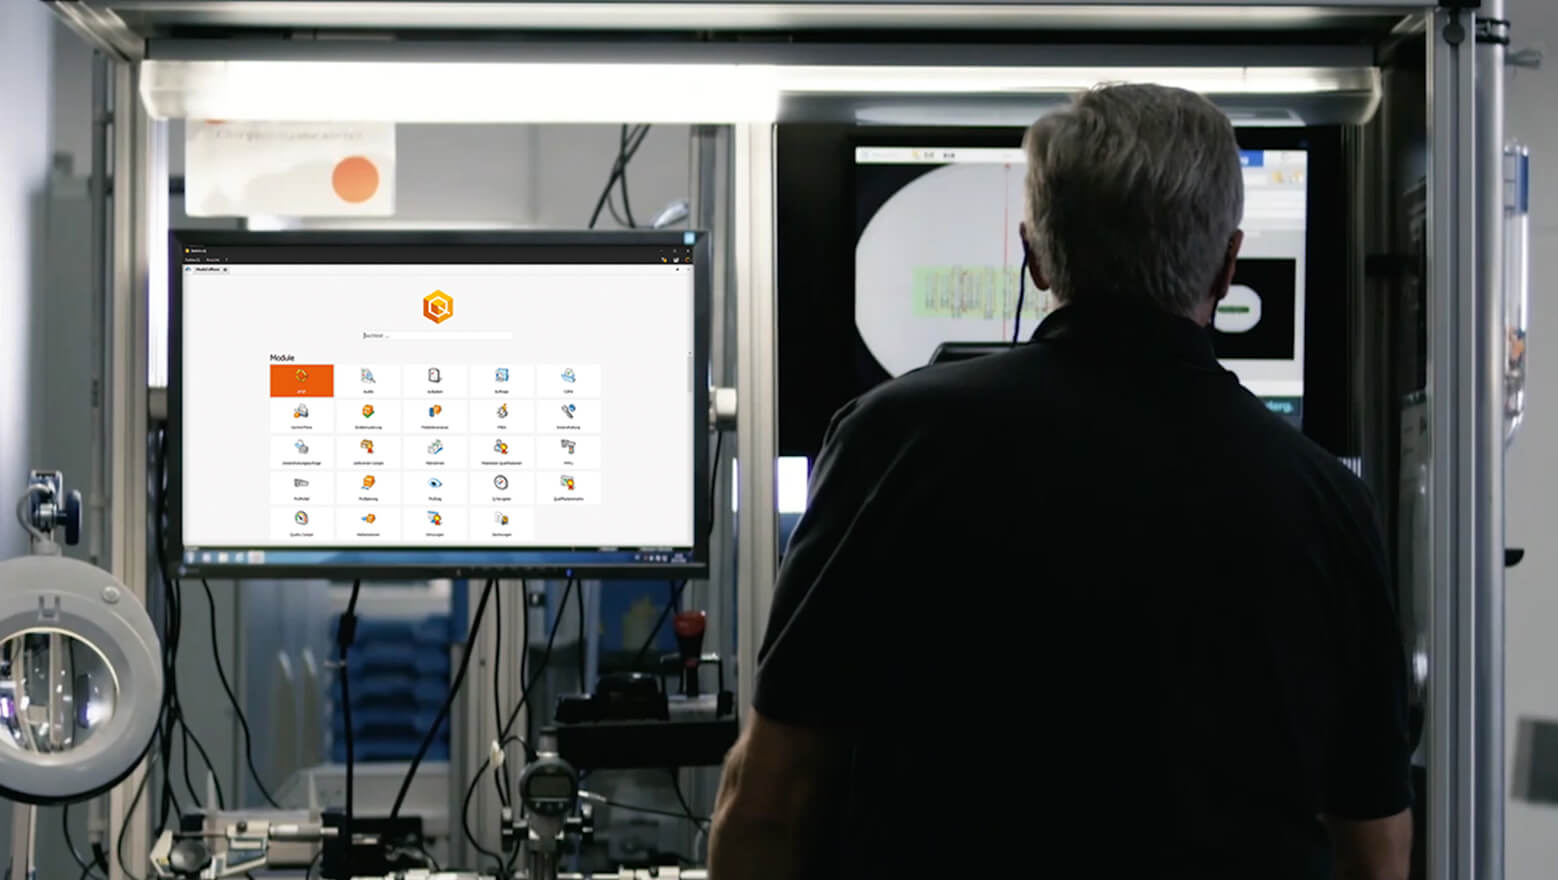 Mann neben einem Monitor in einer Produktionshalle, darauf Software BabtecQ